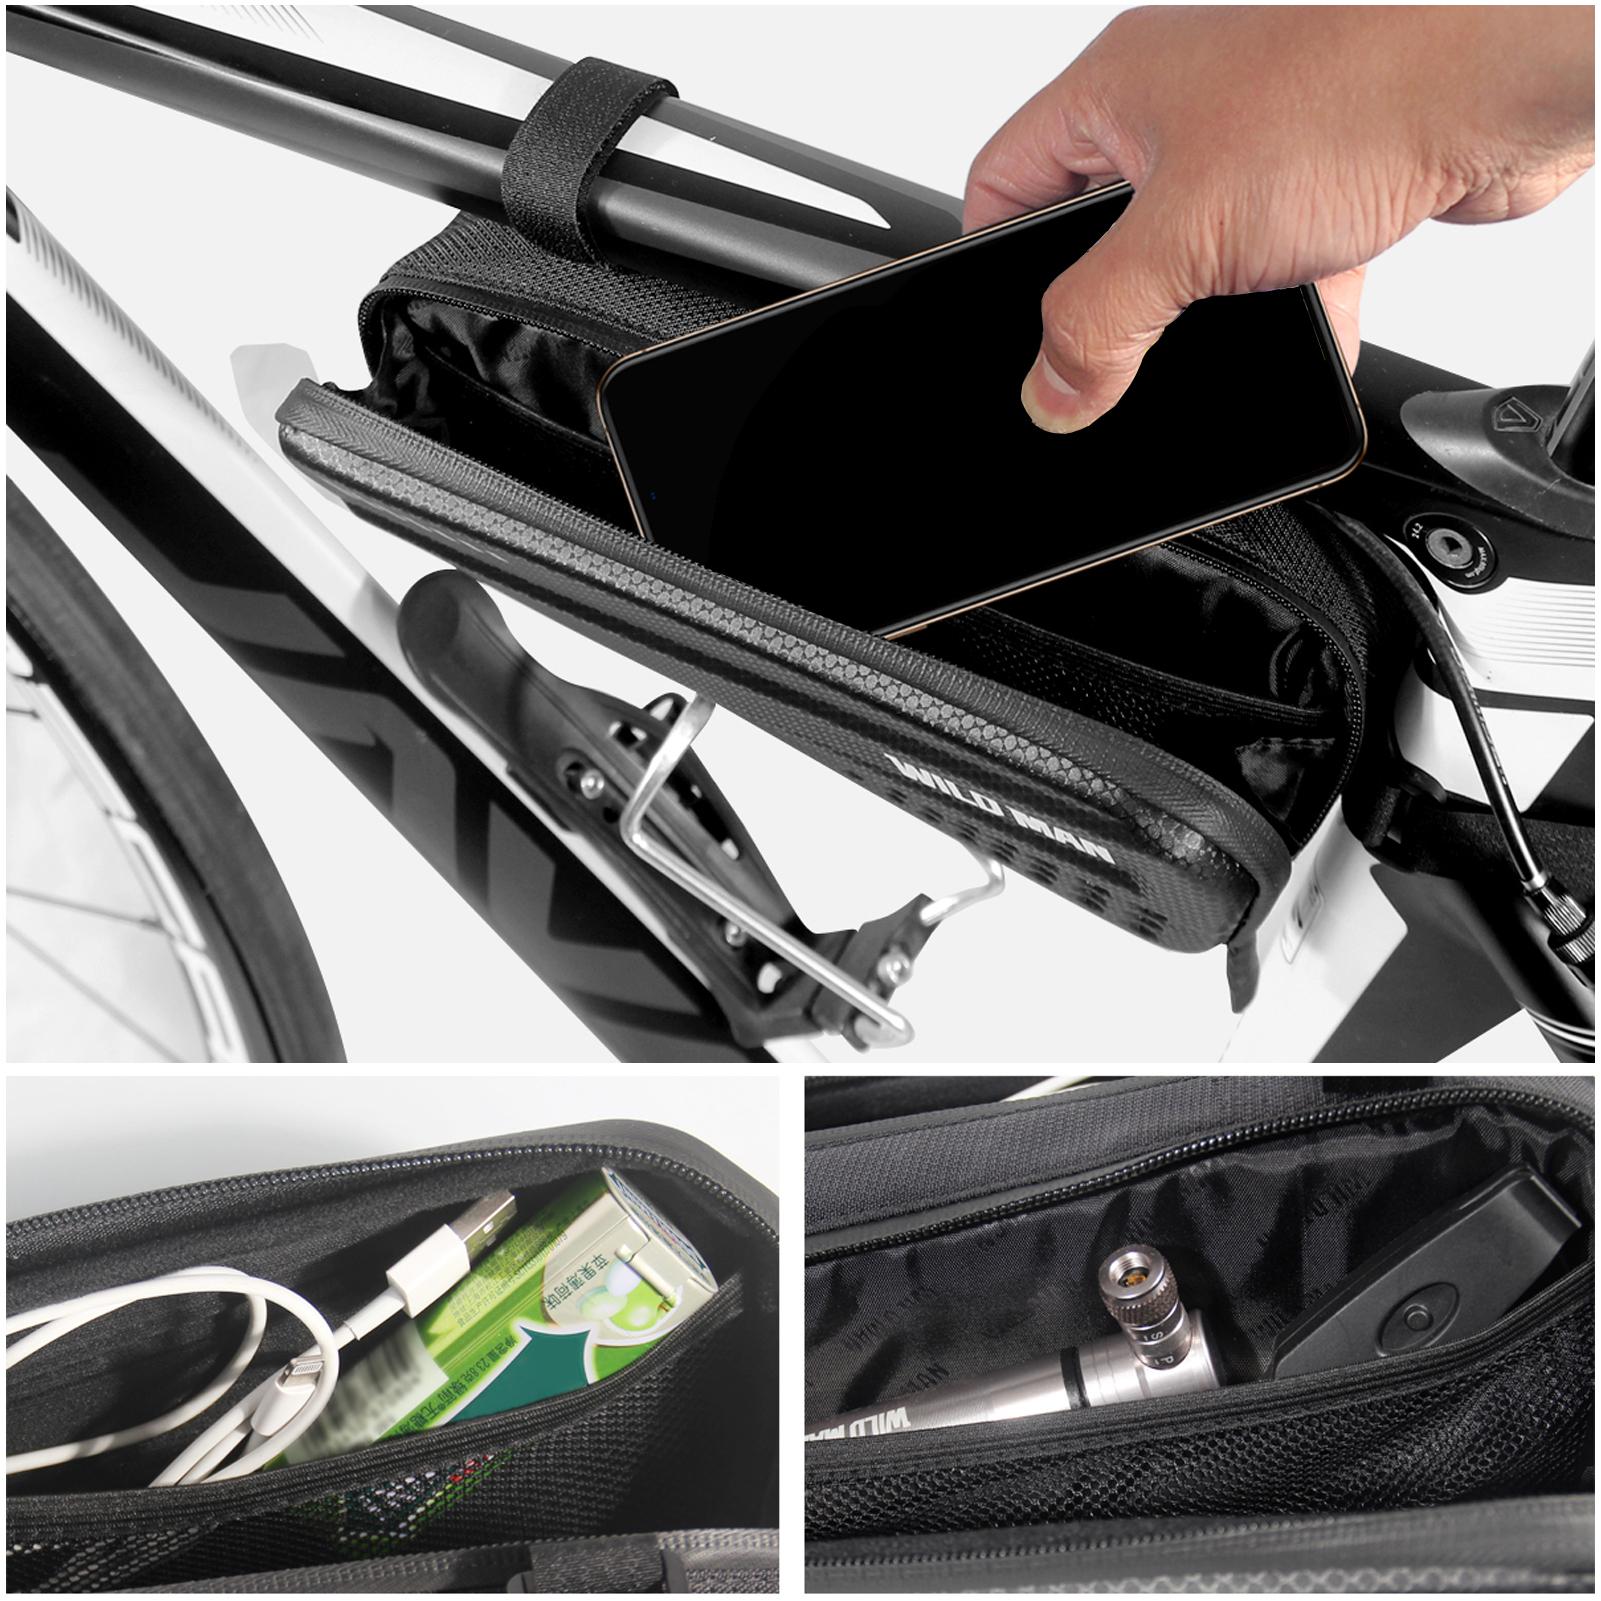 Hình ảnh Chiếc túi đựng đồ đi xe đạp 1,2L vỏ cứng, có khả năng chống thấm nước, chống rơi và đủ lớn cho các vật dụng và dụng cụ hàng ngày của bạn.